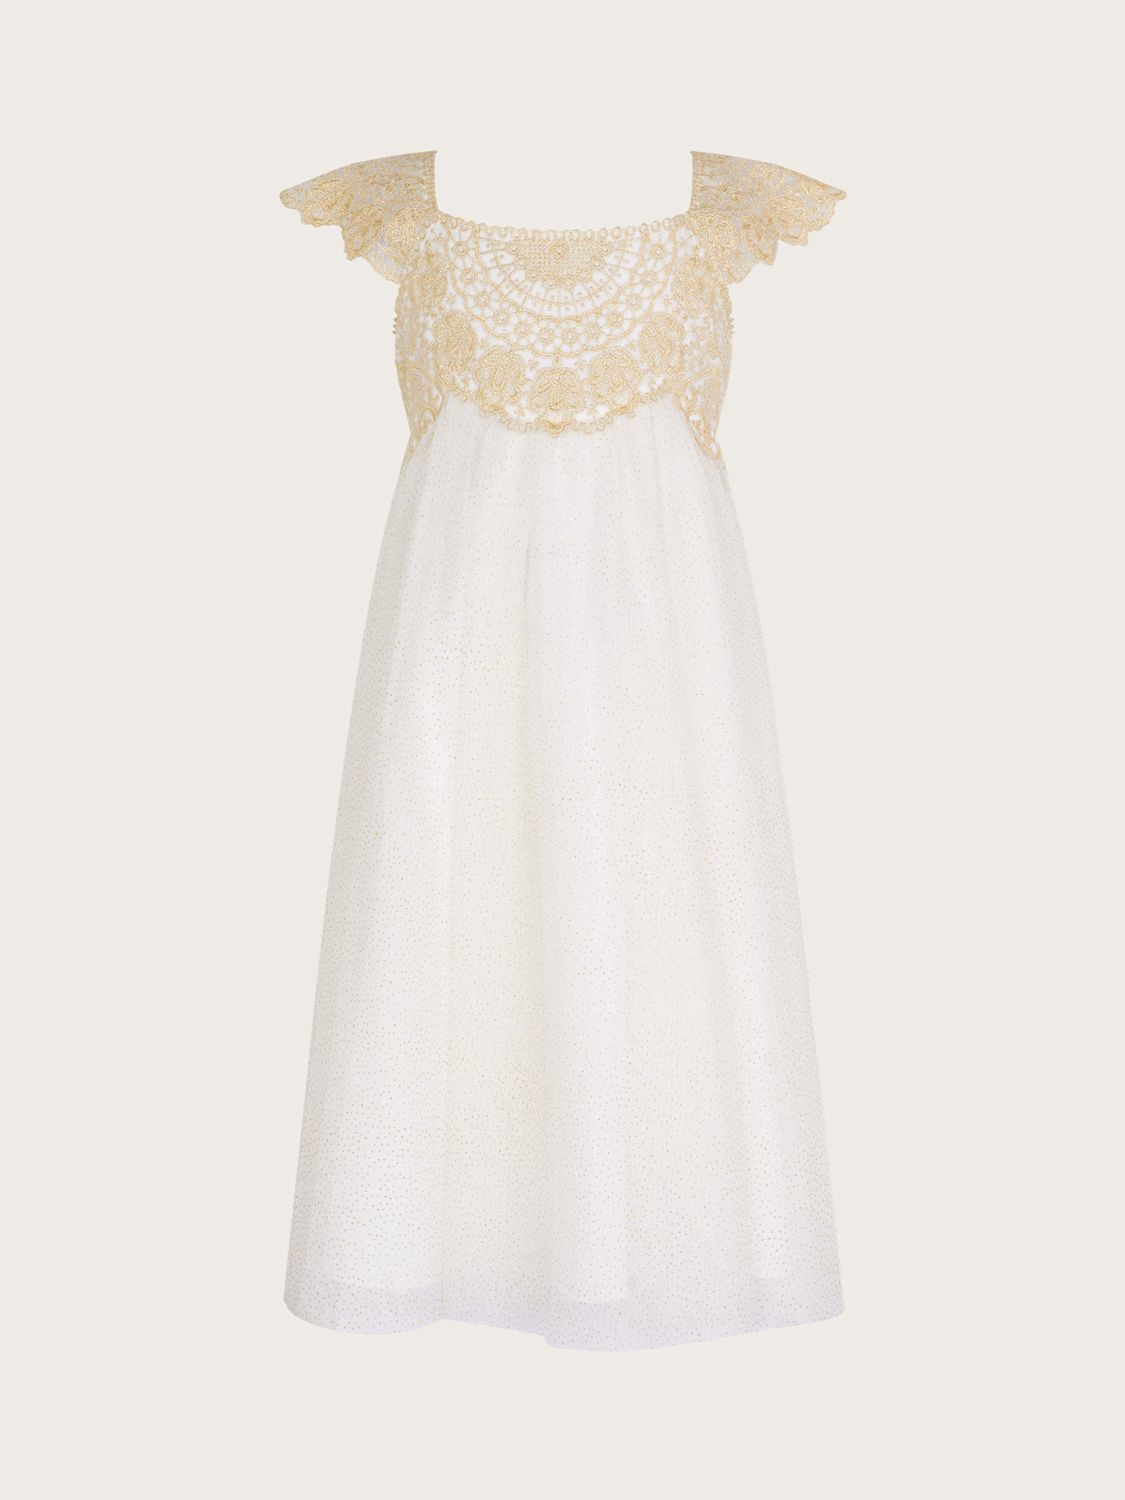 Buy Monsoon Kids' Estella Metallic Dress, White/Gold Online at johnlewis.com